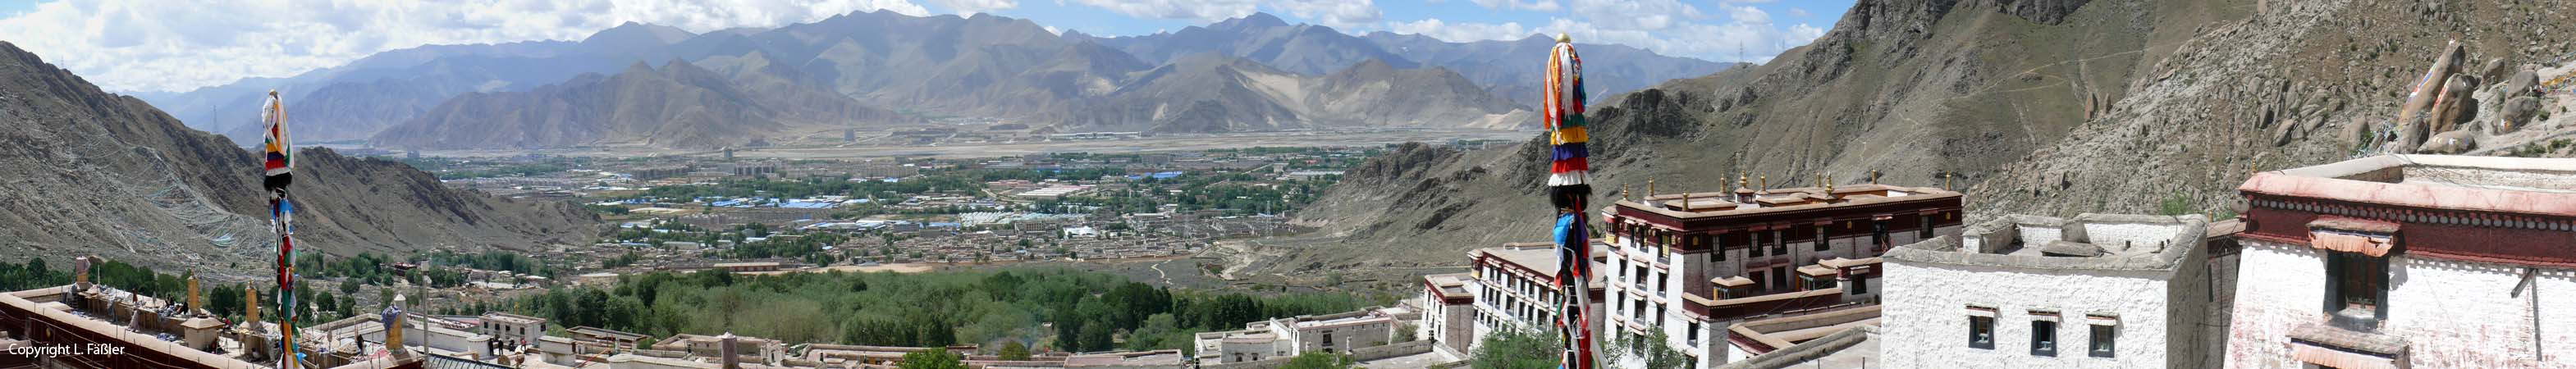 27_Lhasatal_Drepung1_Panorama